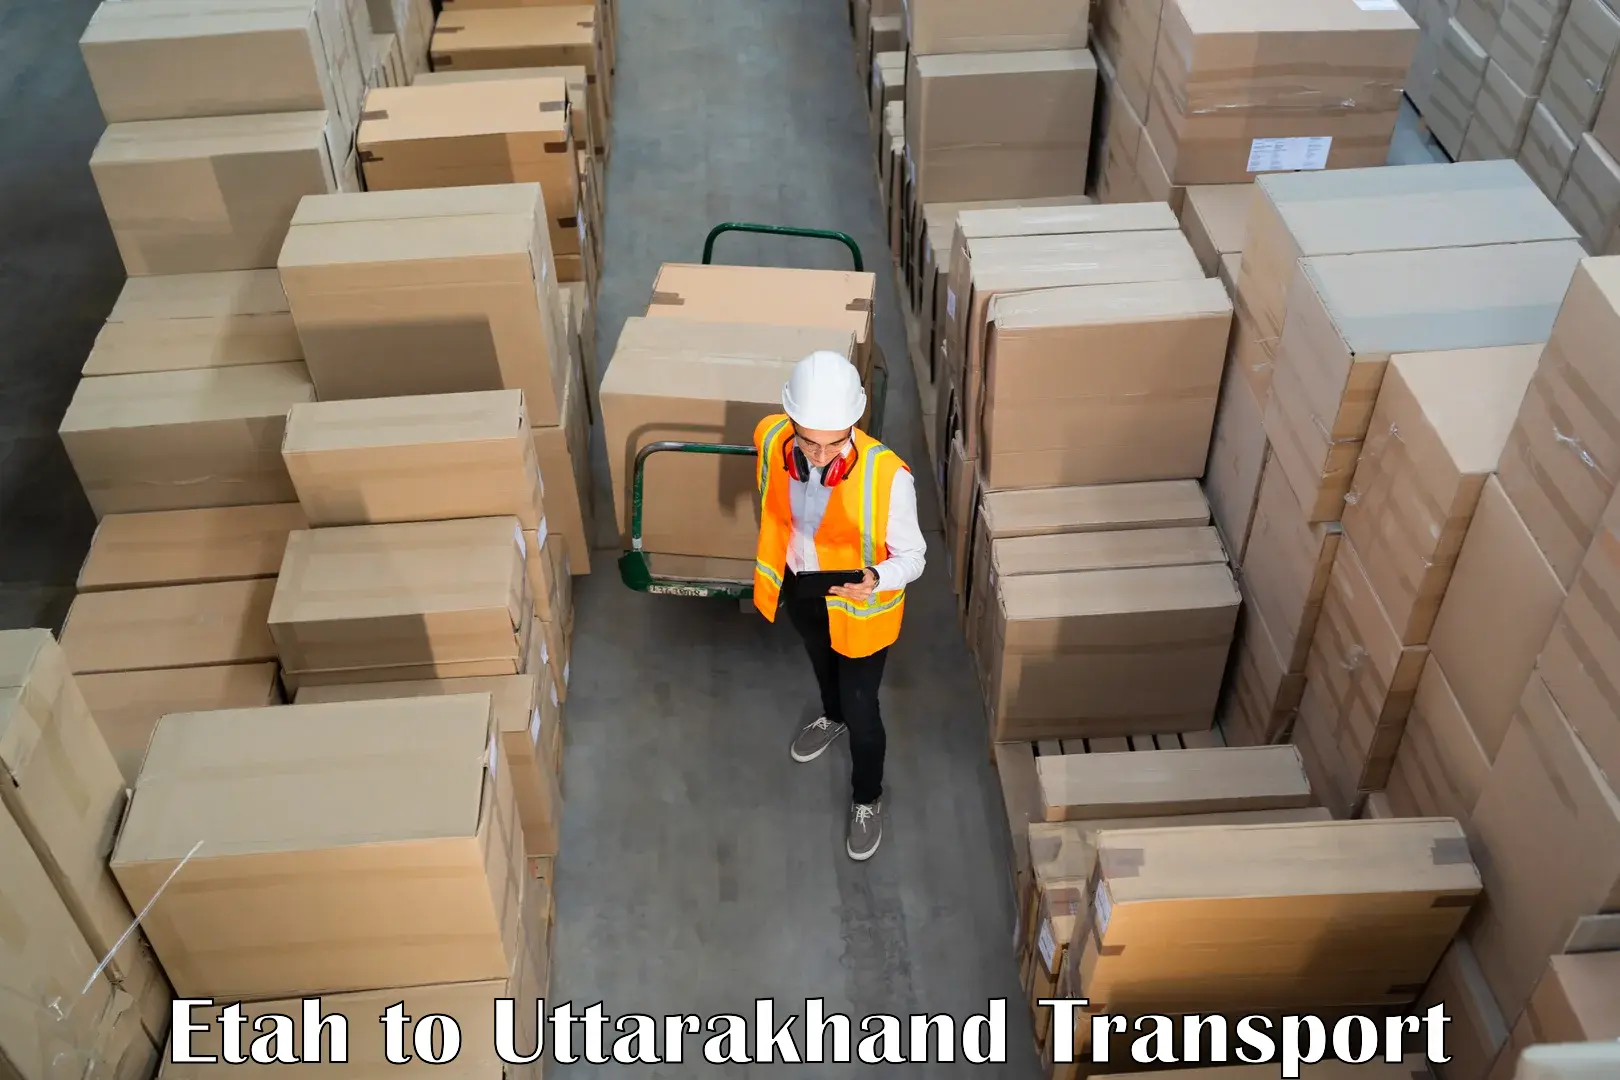 Cargo transport services Etah to IIT Roorkee